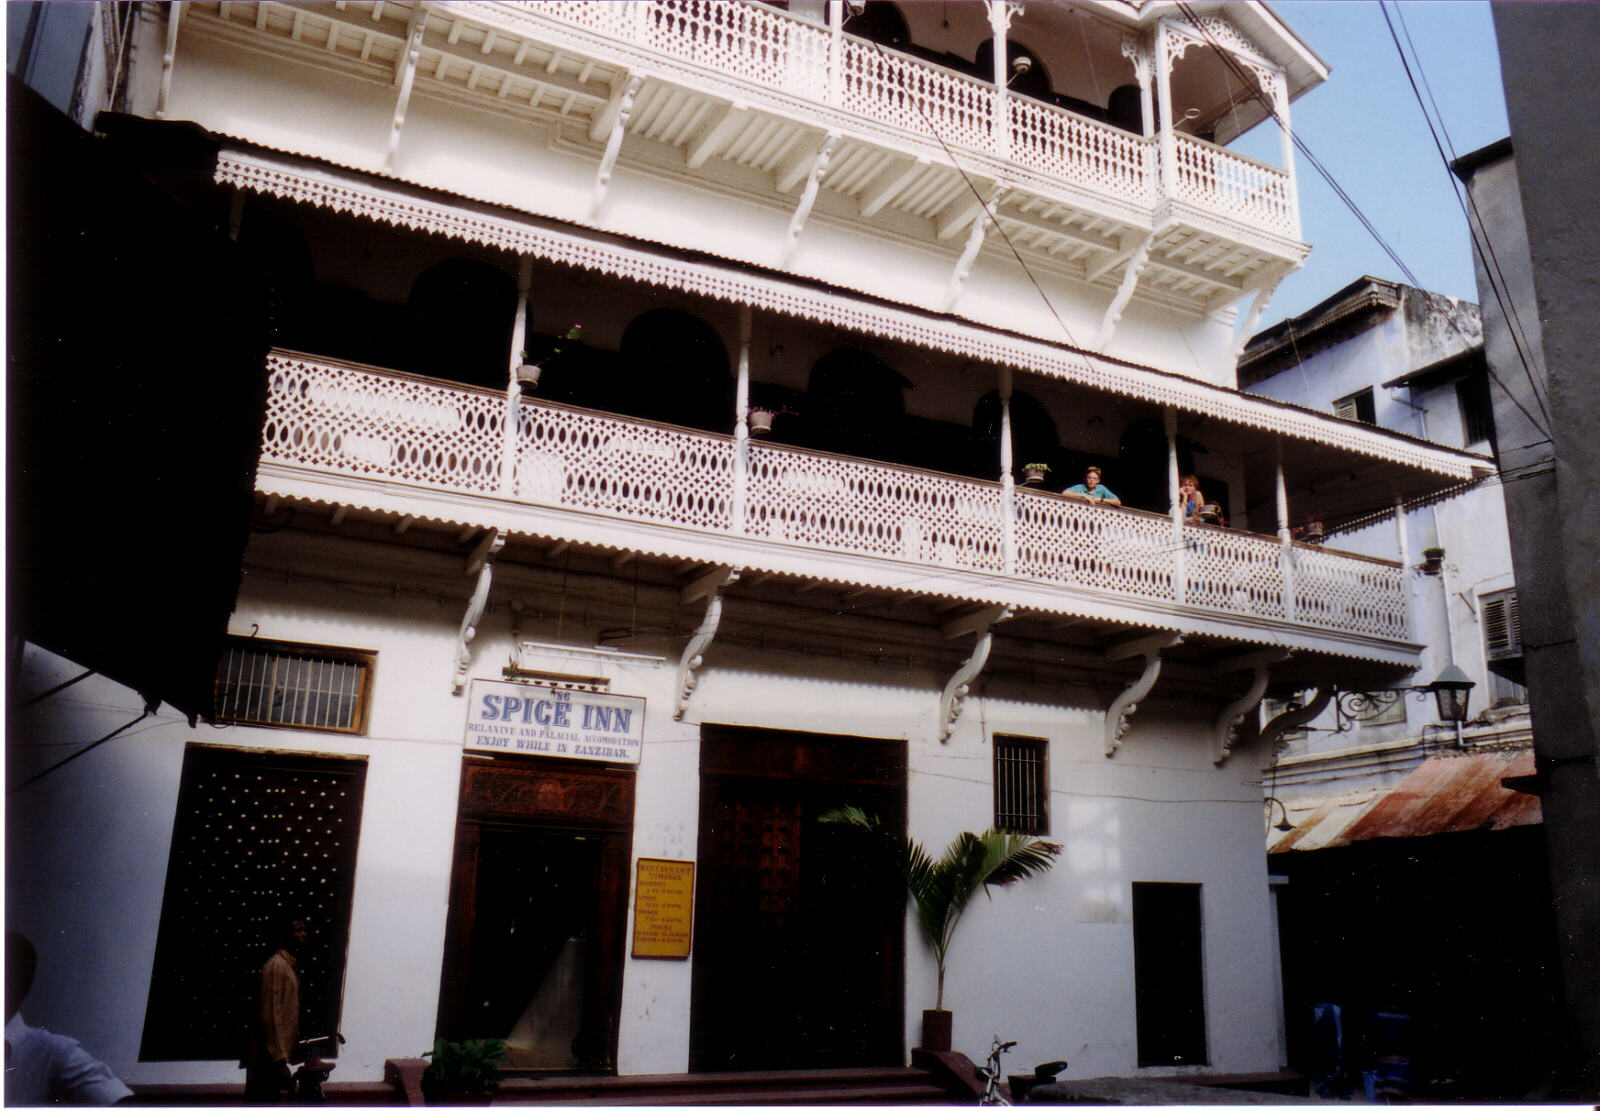 The Spice Inn in the old town, Zanzibar, Tanzania